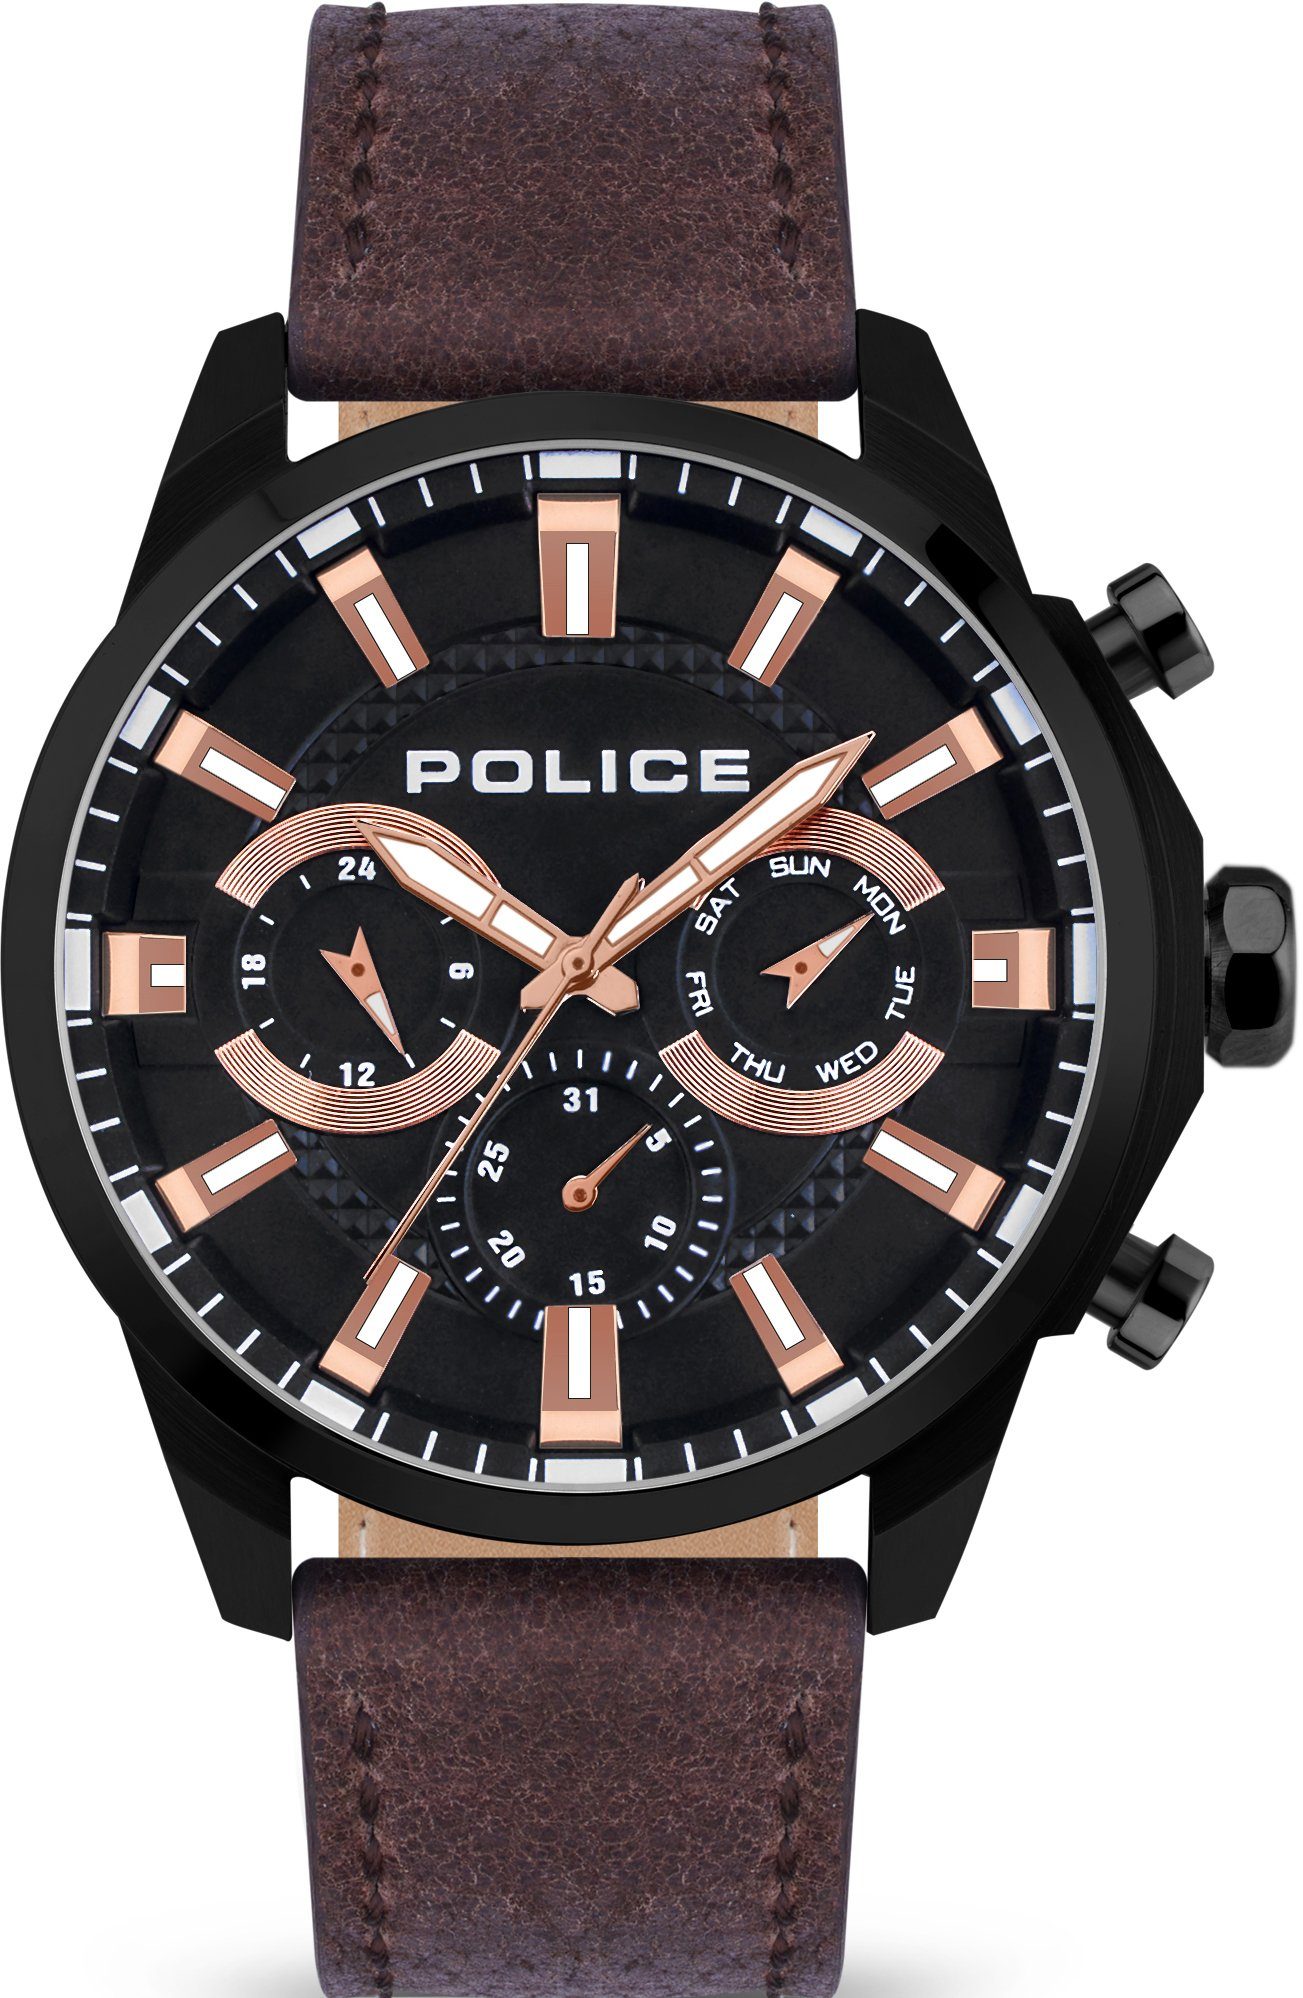 Police Uhren online kaufen | OTTO